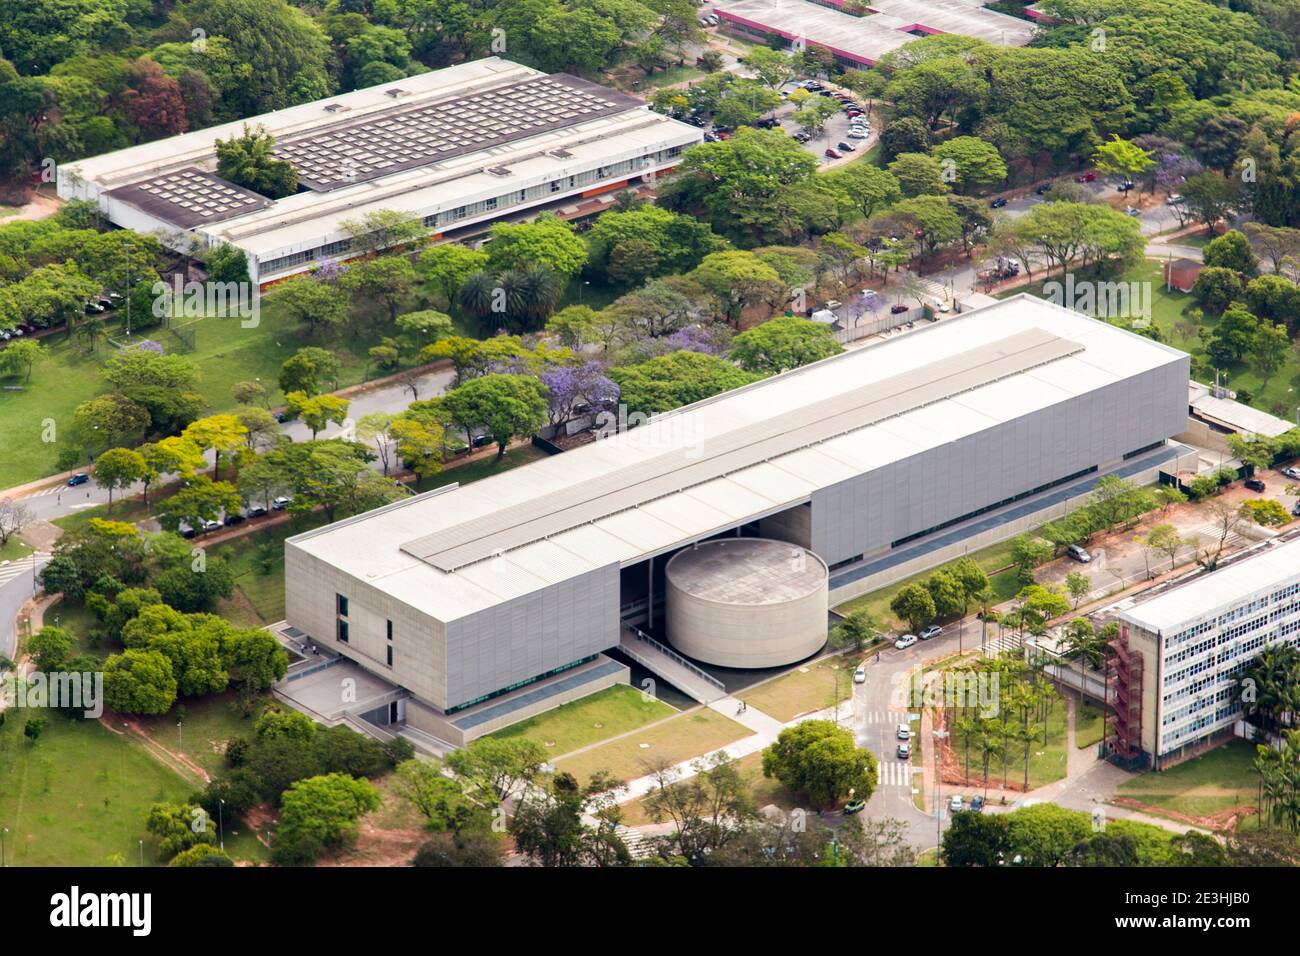 Vue aérienne du campus de l'Université de São Paulo - Brésil Banque D'Images